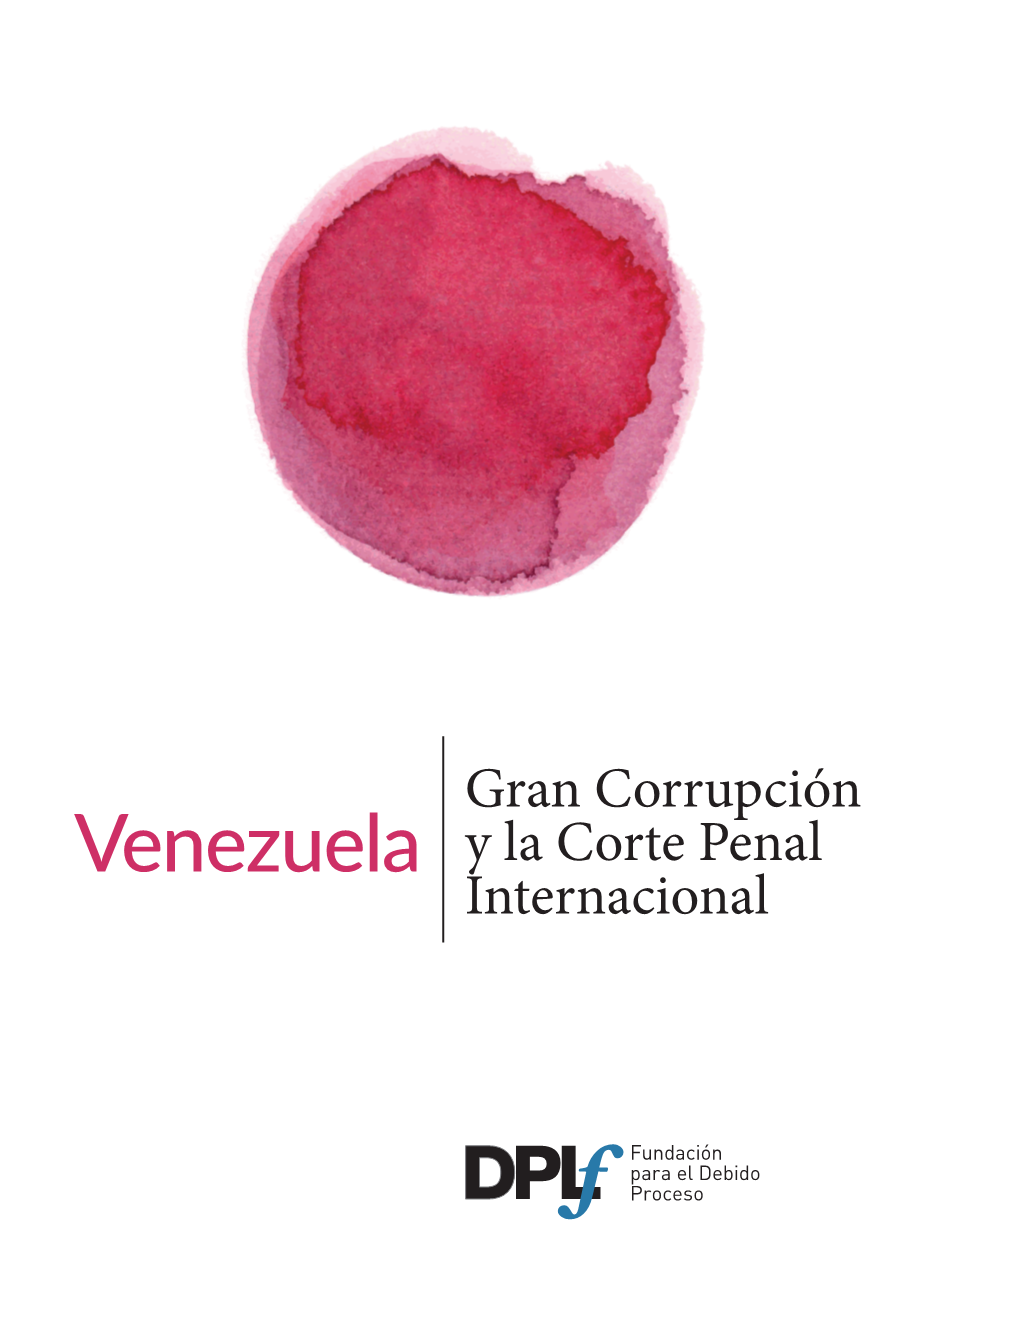 Venezuela Y La Corte Penal Internacional Traducción Al Español Del Artículo “Grand Corruption and the International Criminal Court in the ‘Venezuela Situation’”